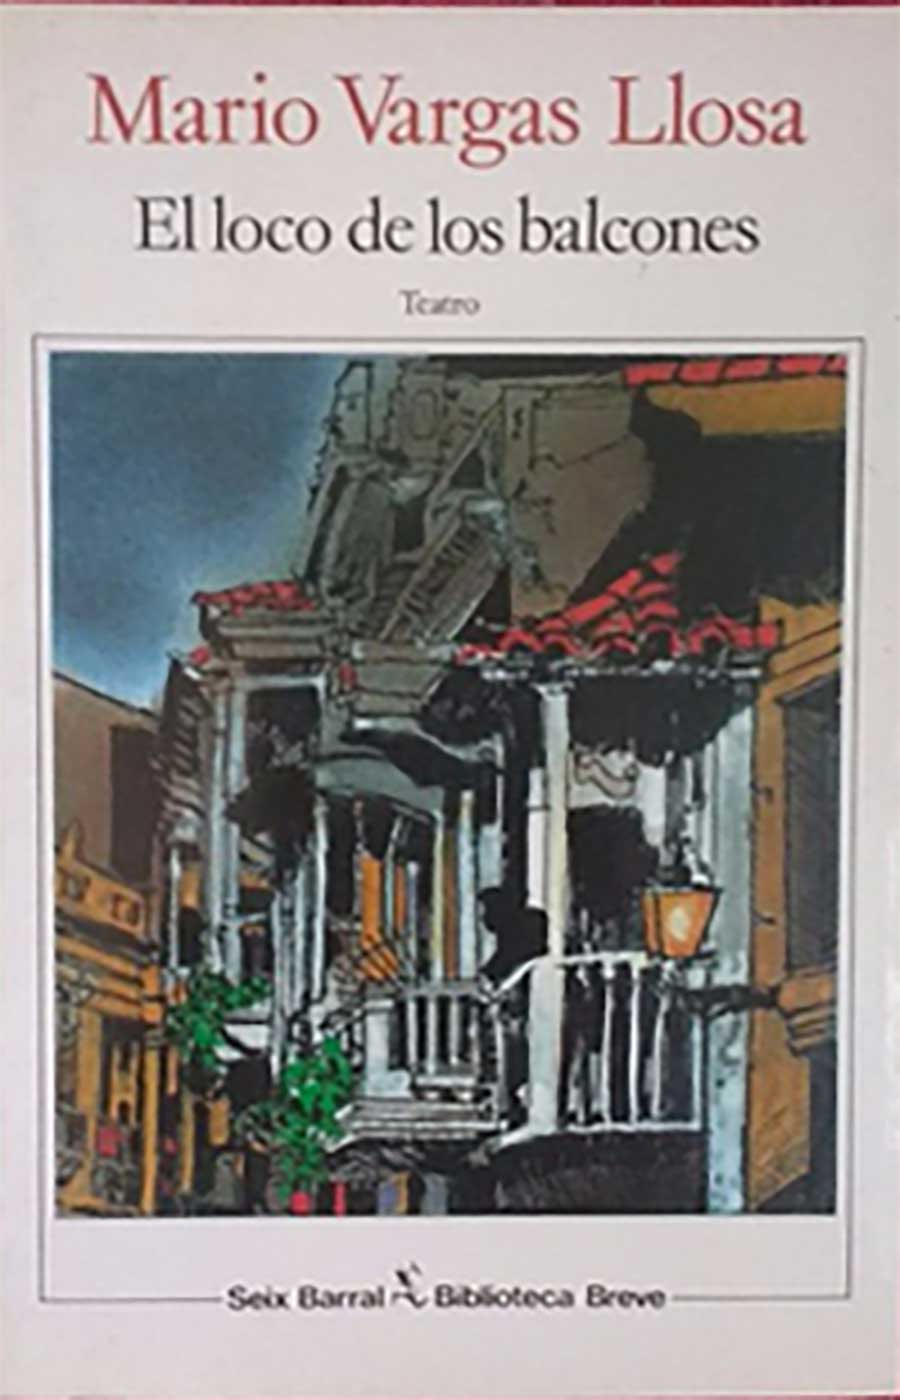 obra de teatro del escritor y Premio Nóbel de literatura Mario Vargas Llosa fechada en 1993.